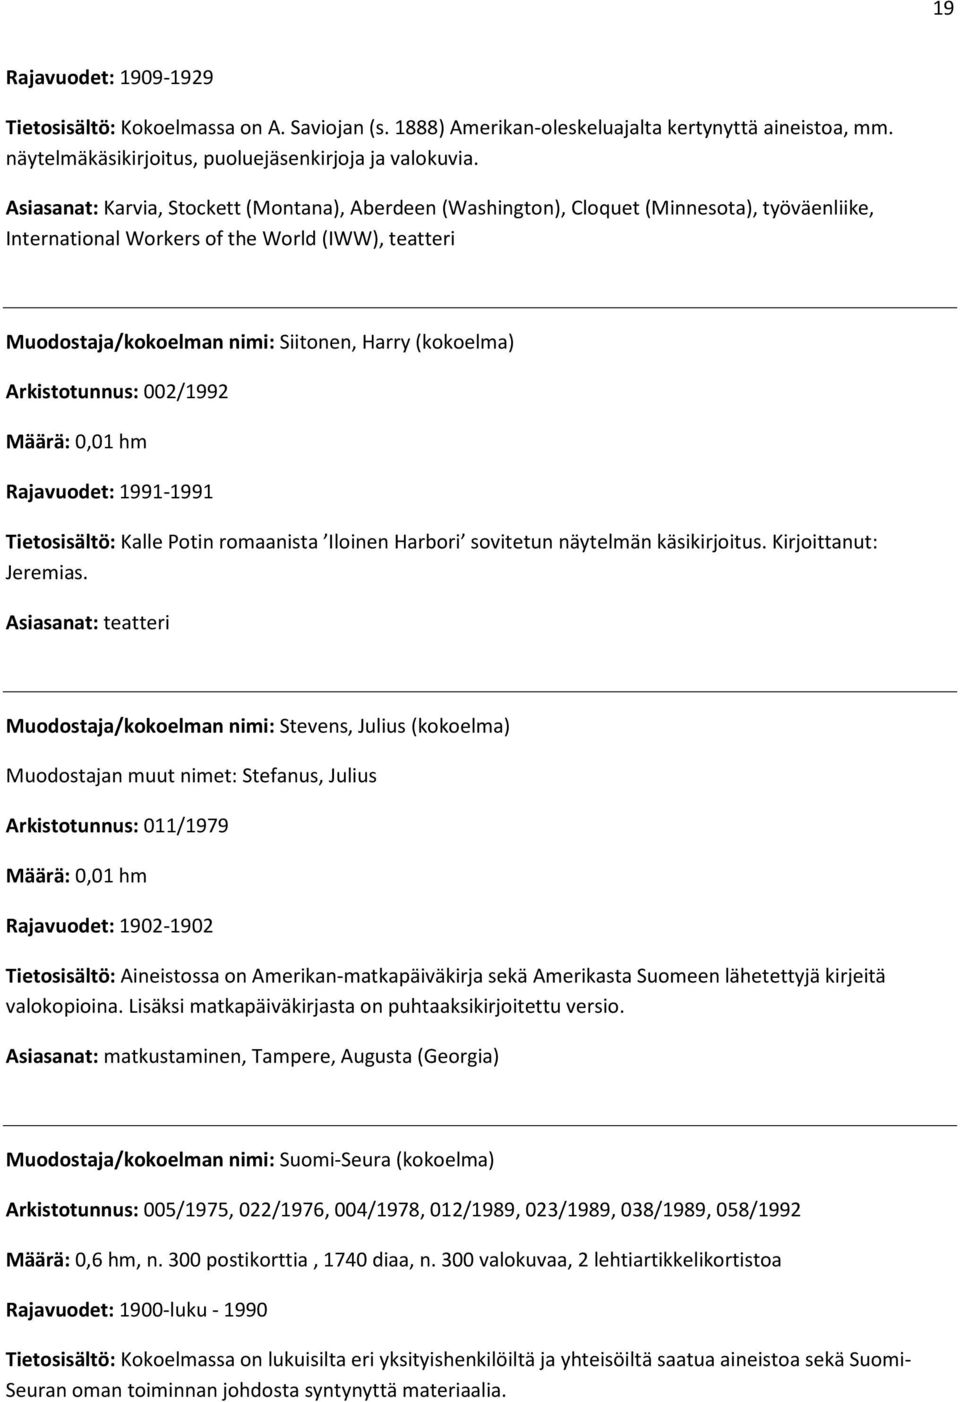 (kokoelma) Arkistotunnus: 002/1992 Rajavuodet: 1991-1991 Tietosisältö: Kalle Potin romaanista Iloinen Harbori sovitetun näytelmän käsikirjoitus. Kirjoittanut: Jeremias.